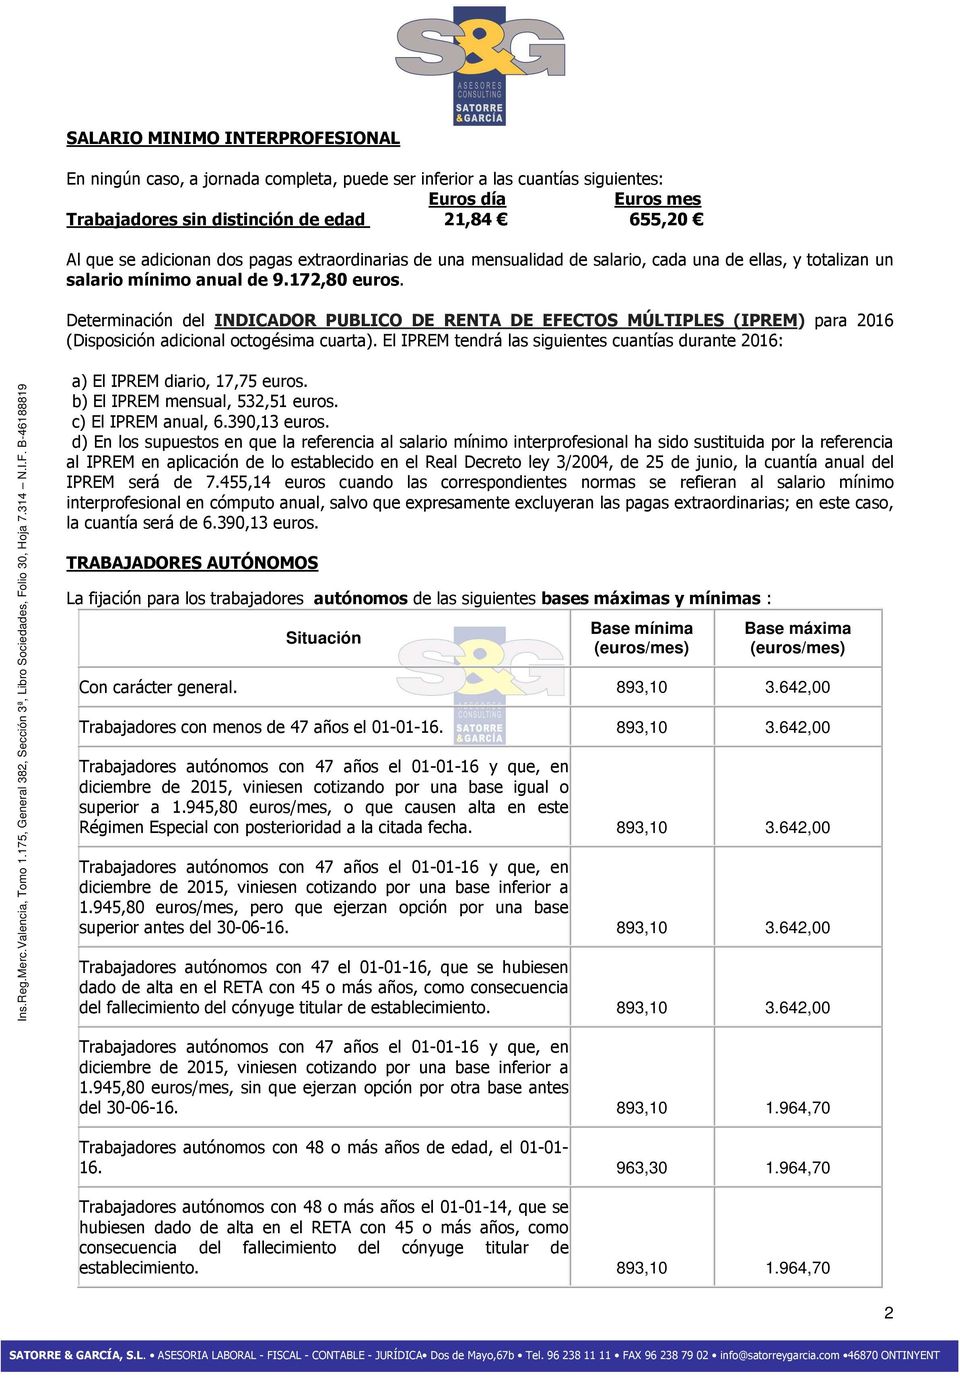 Determinación del INDICADOR PUBLICO DE RENTA DE EFECTOS MÚLTIPLES (IPREM) para 2016 (Disposición adicional octogésima cuarta).